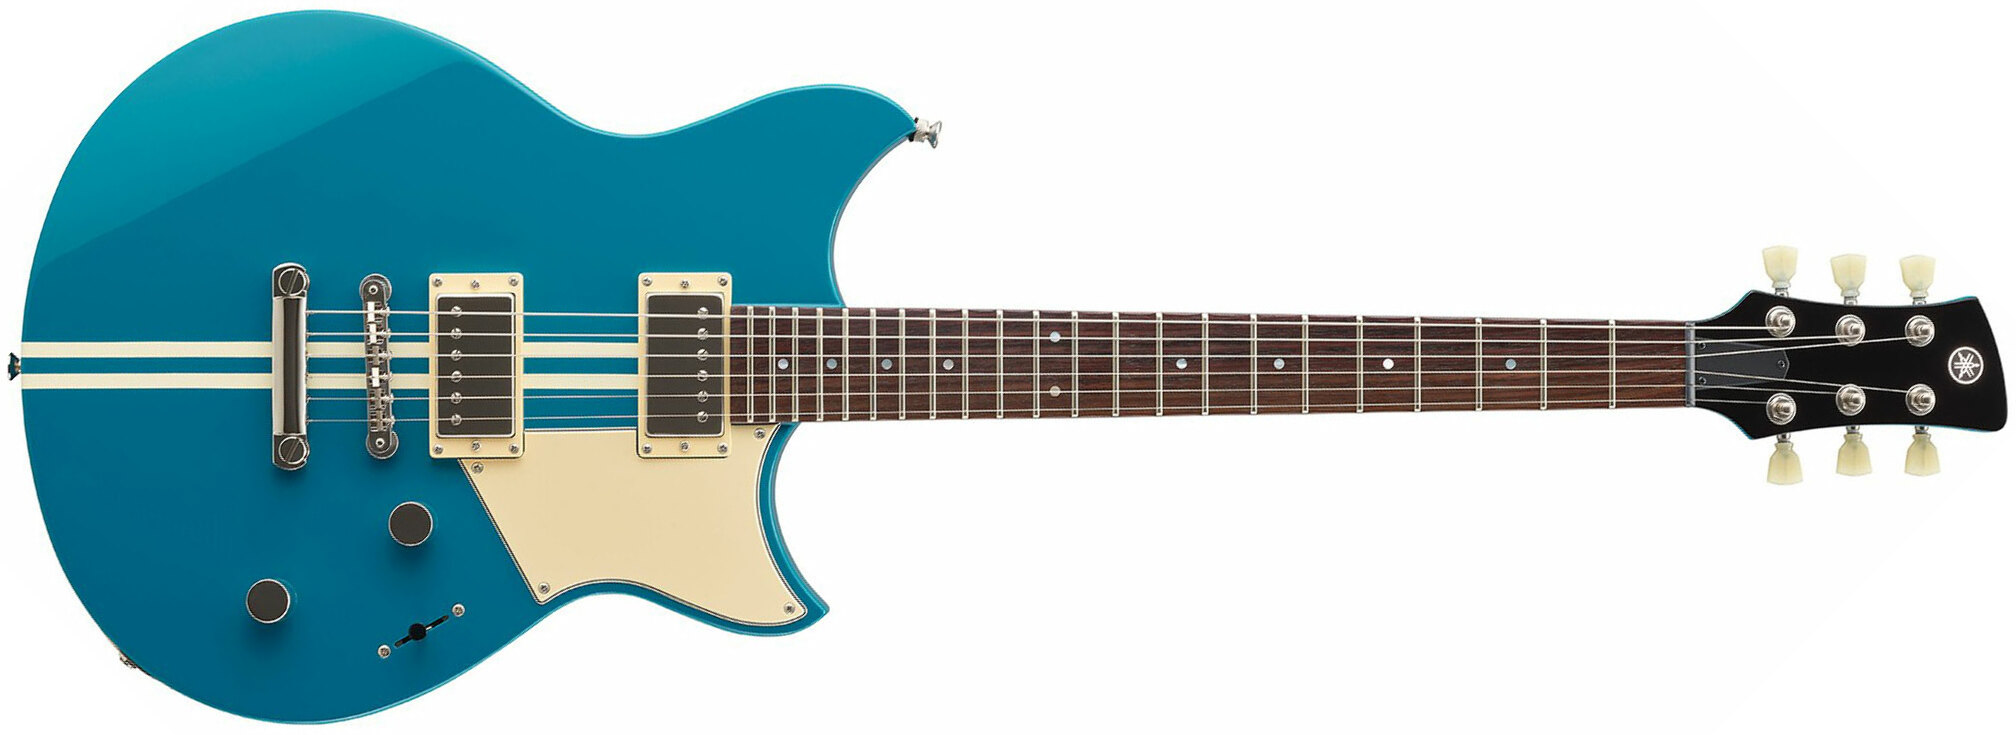 Yamaha Rse20 Revstar Element Hh Ht Rw - Swift Blue - Guitarra eléctrica de doble corte. - Main picture